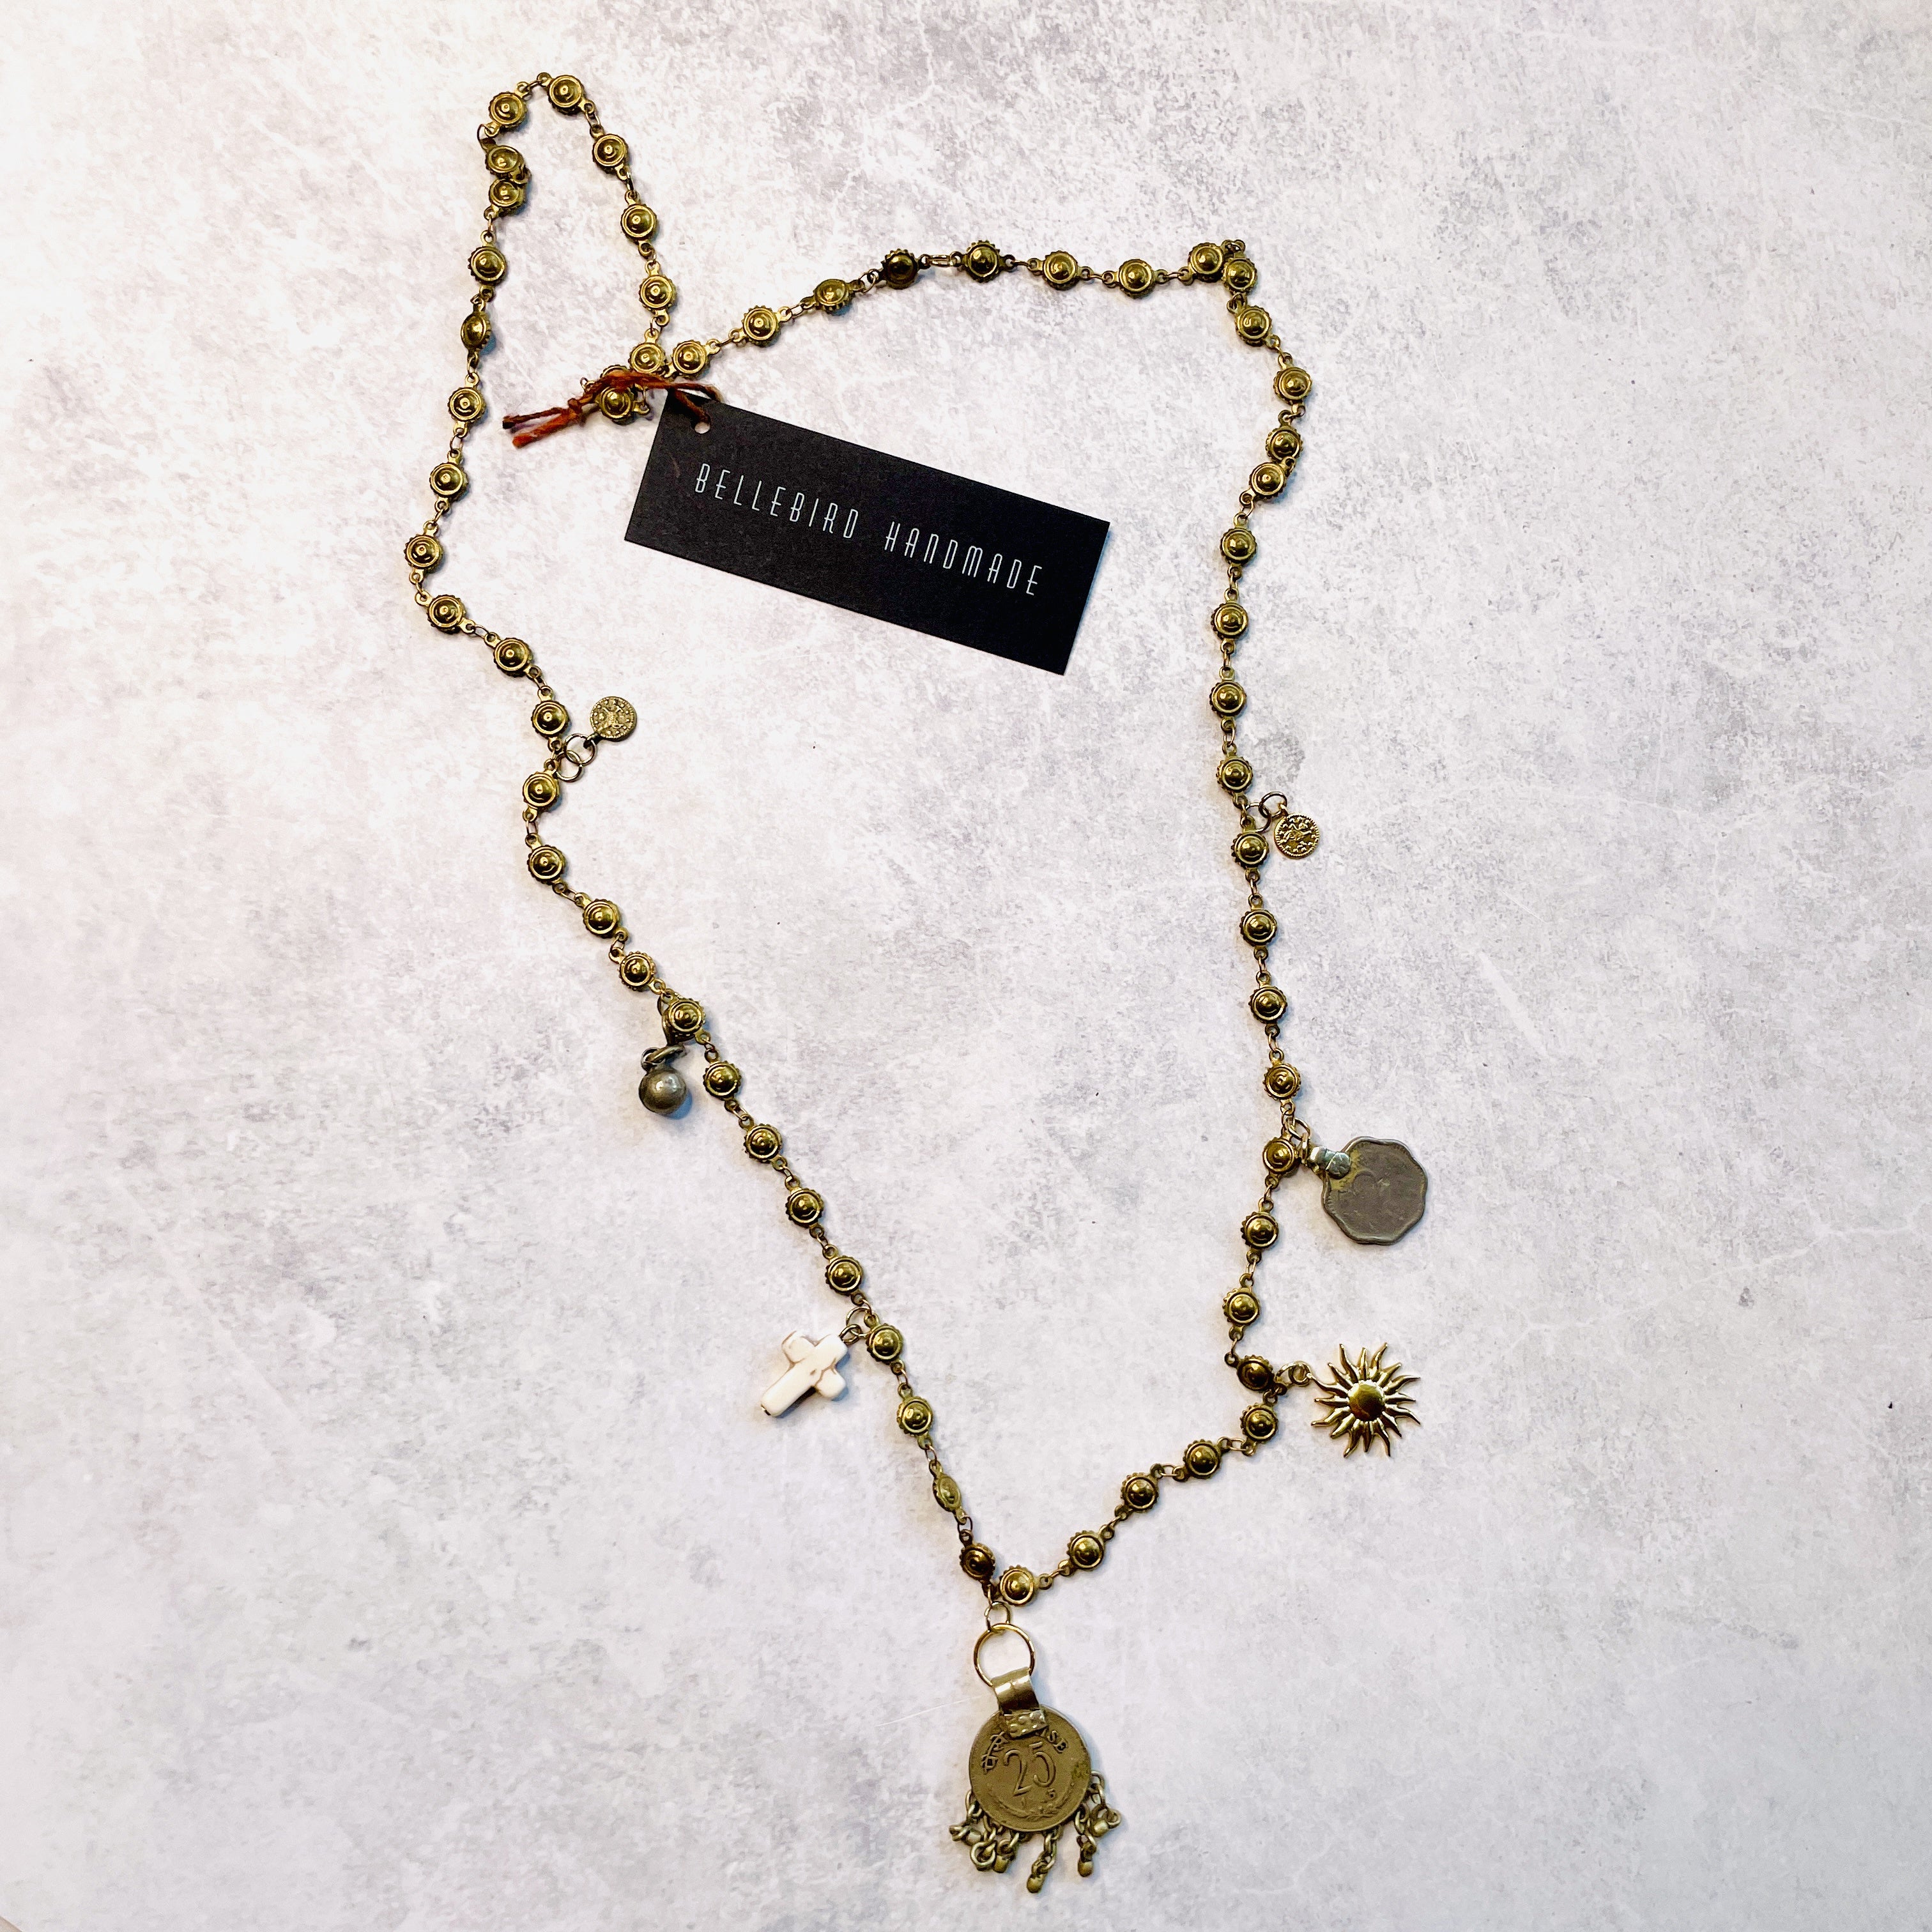 Vintage Trinket Necklace - 6